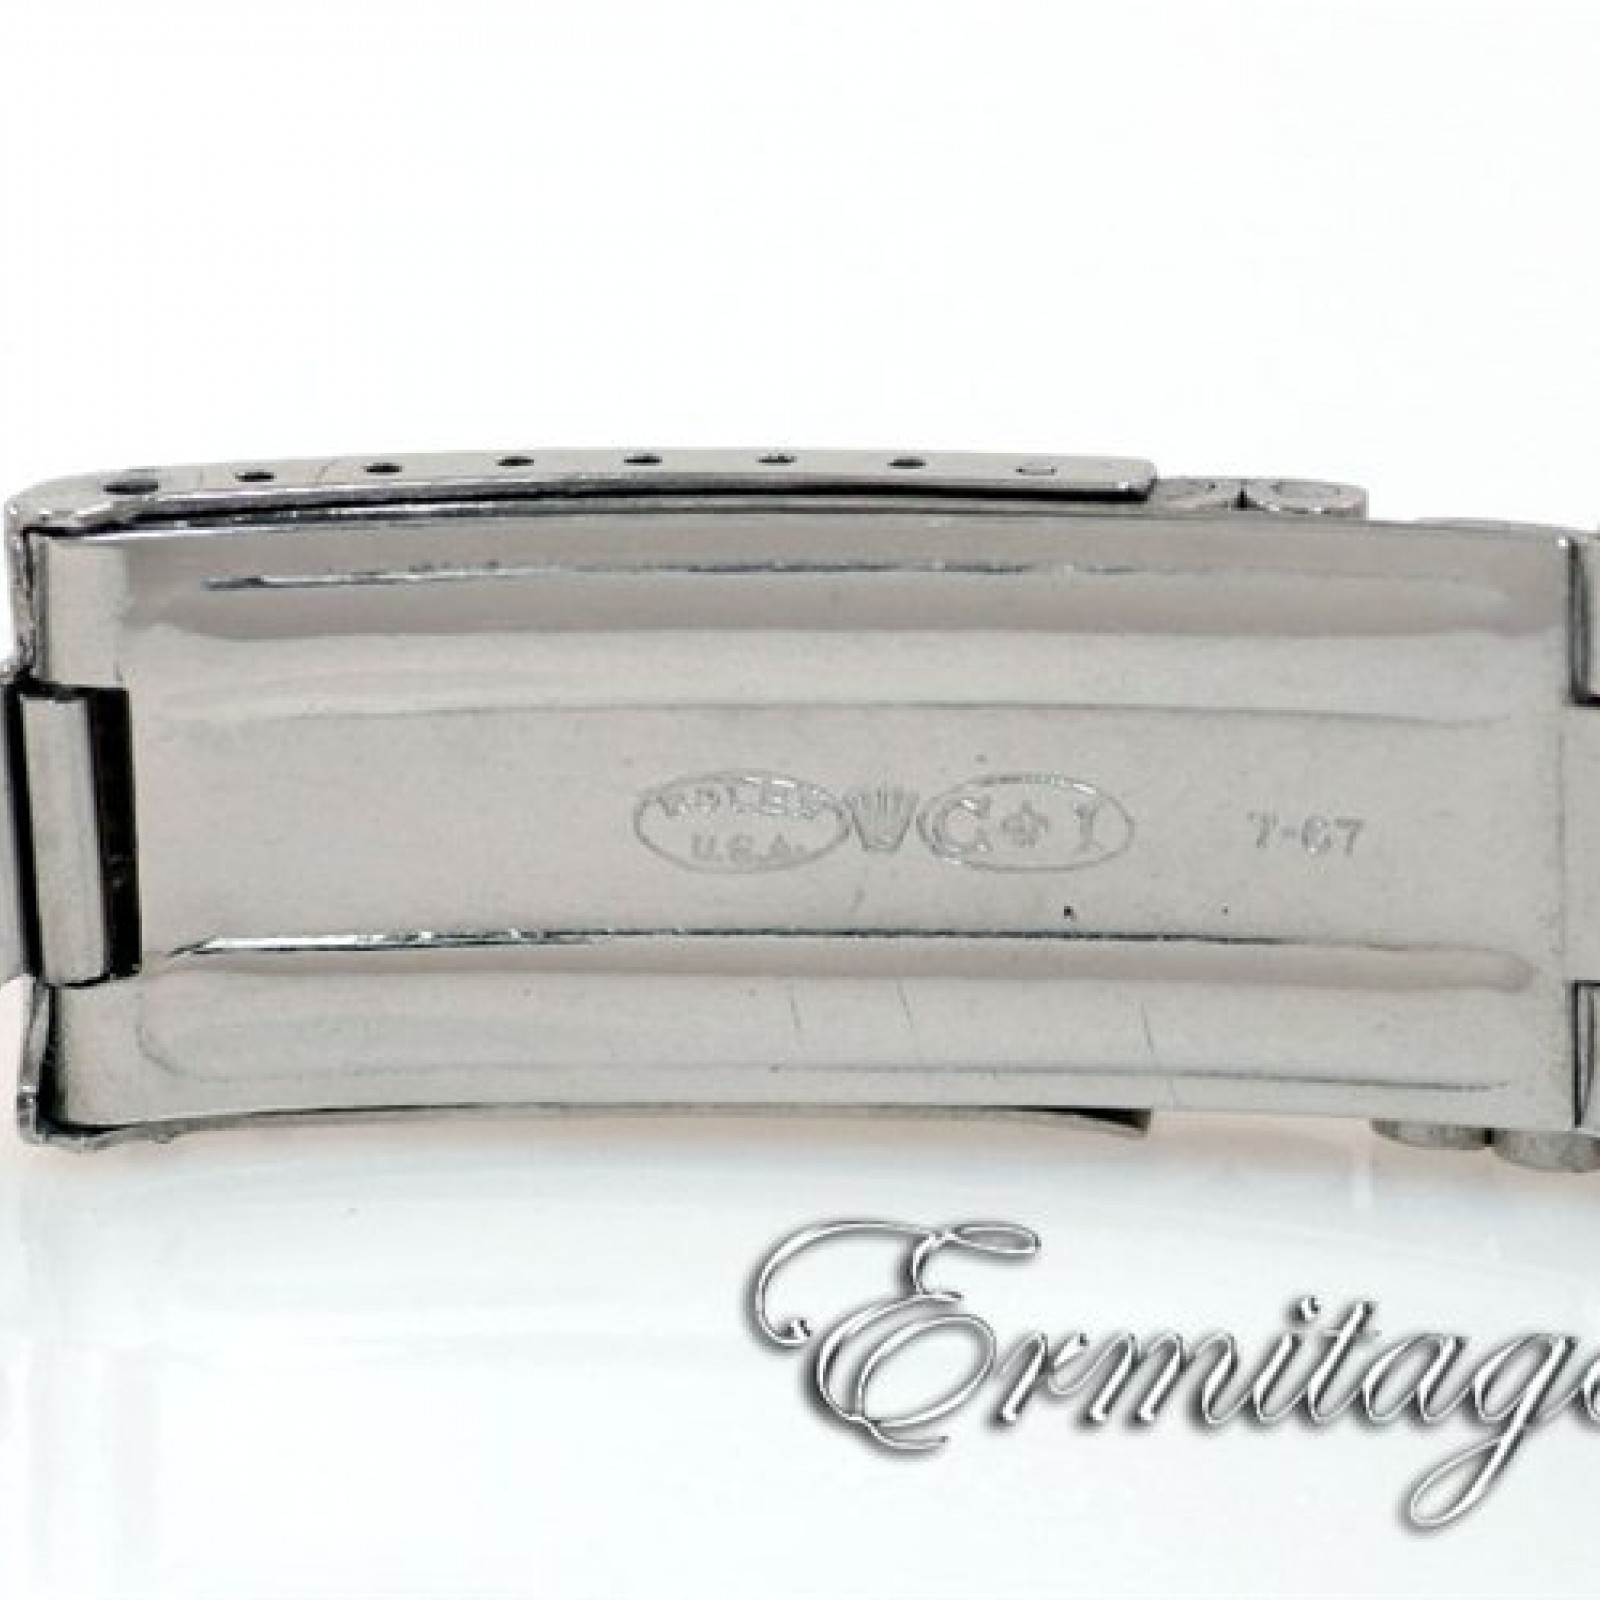 Vintage Rolex Oysterdate Precision 6694 Steel